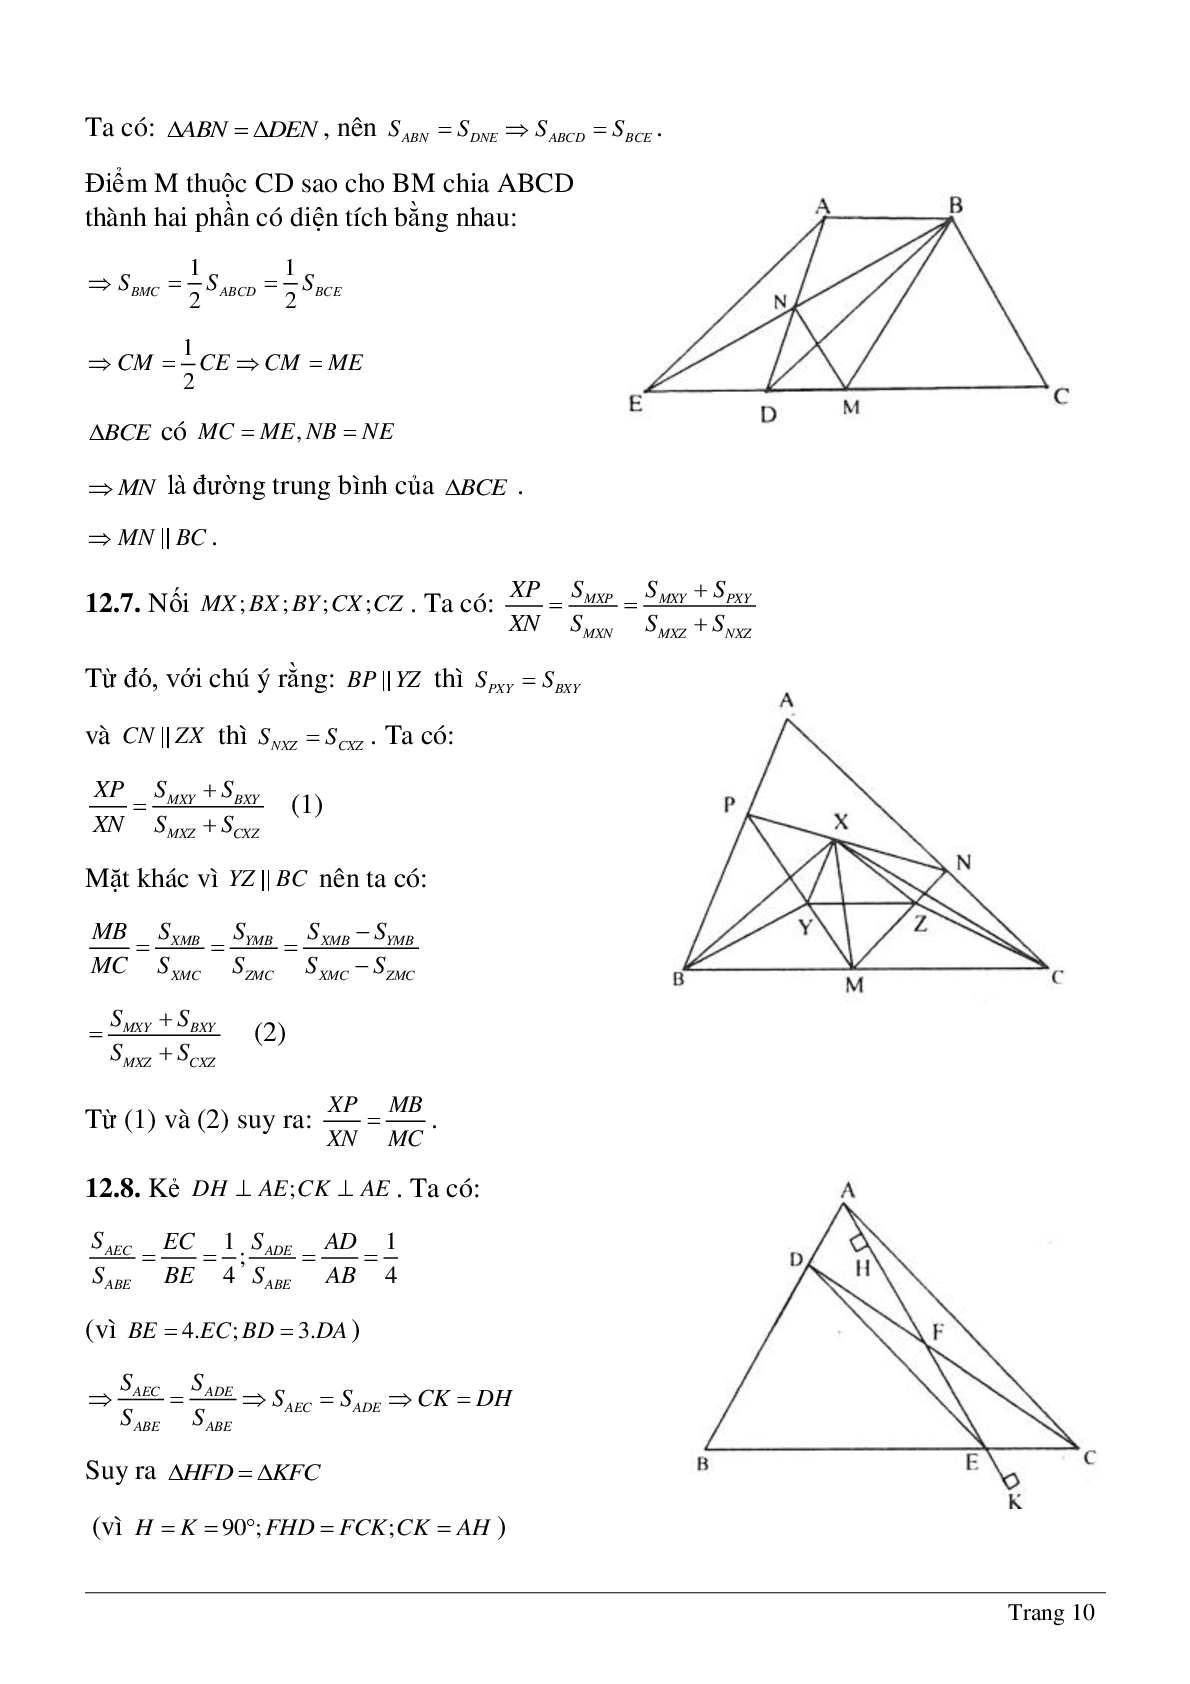 Phương pháp diện tích - Hình học toán 8 (trang 10)